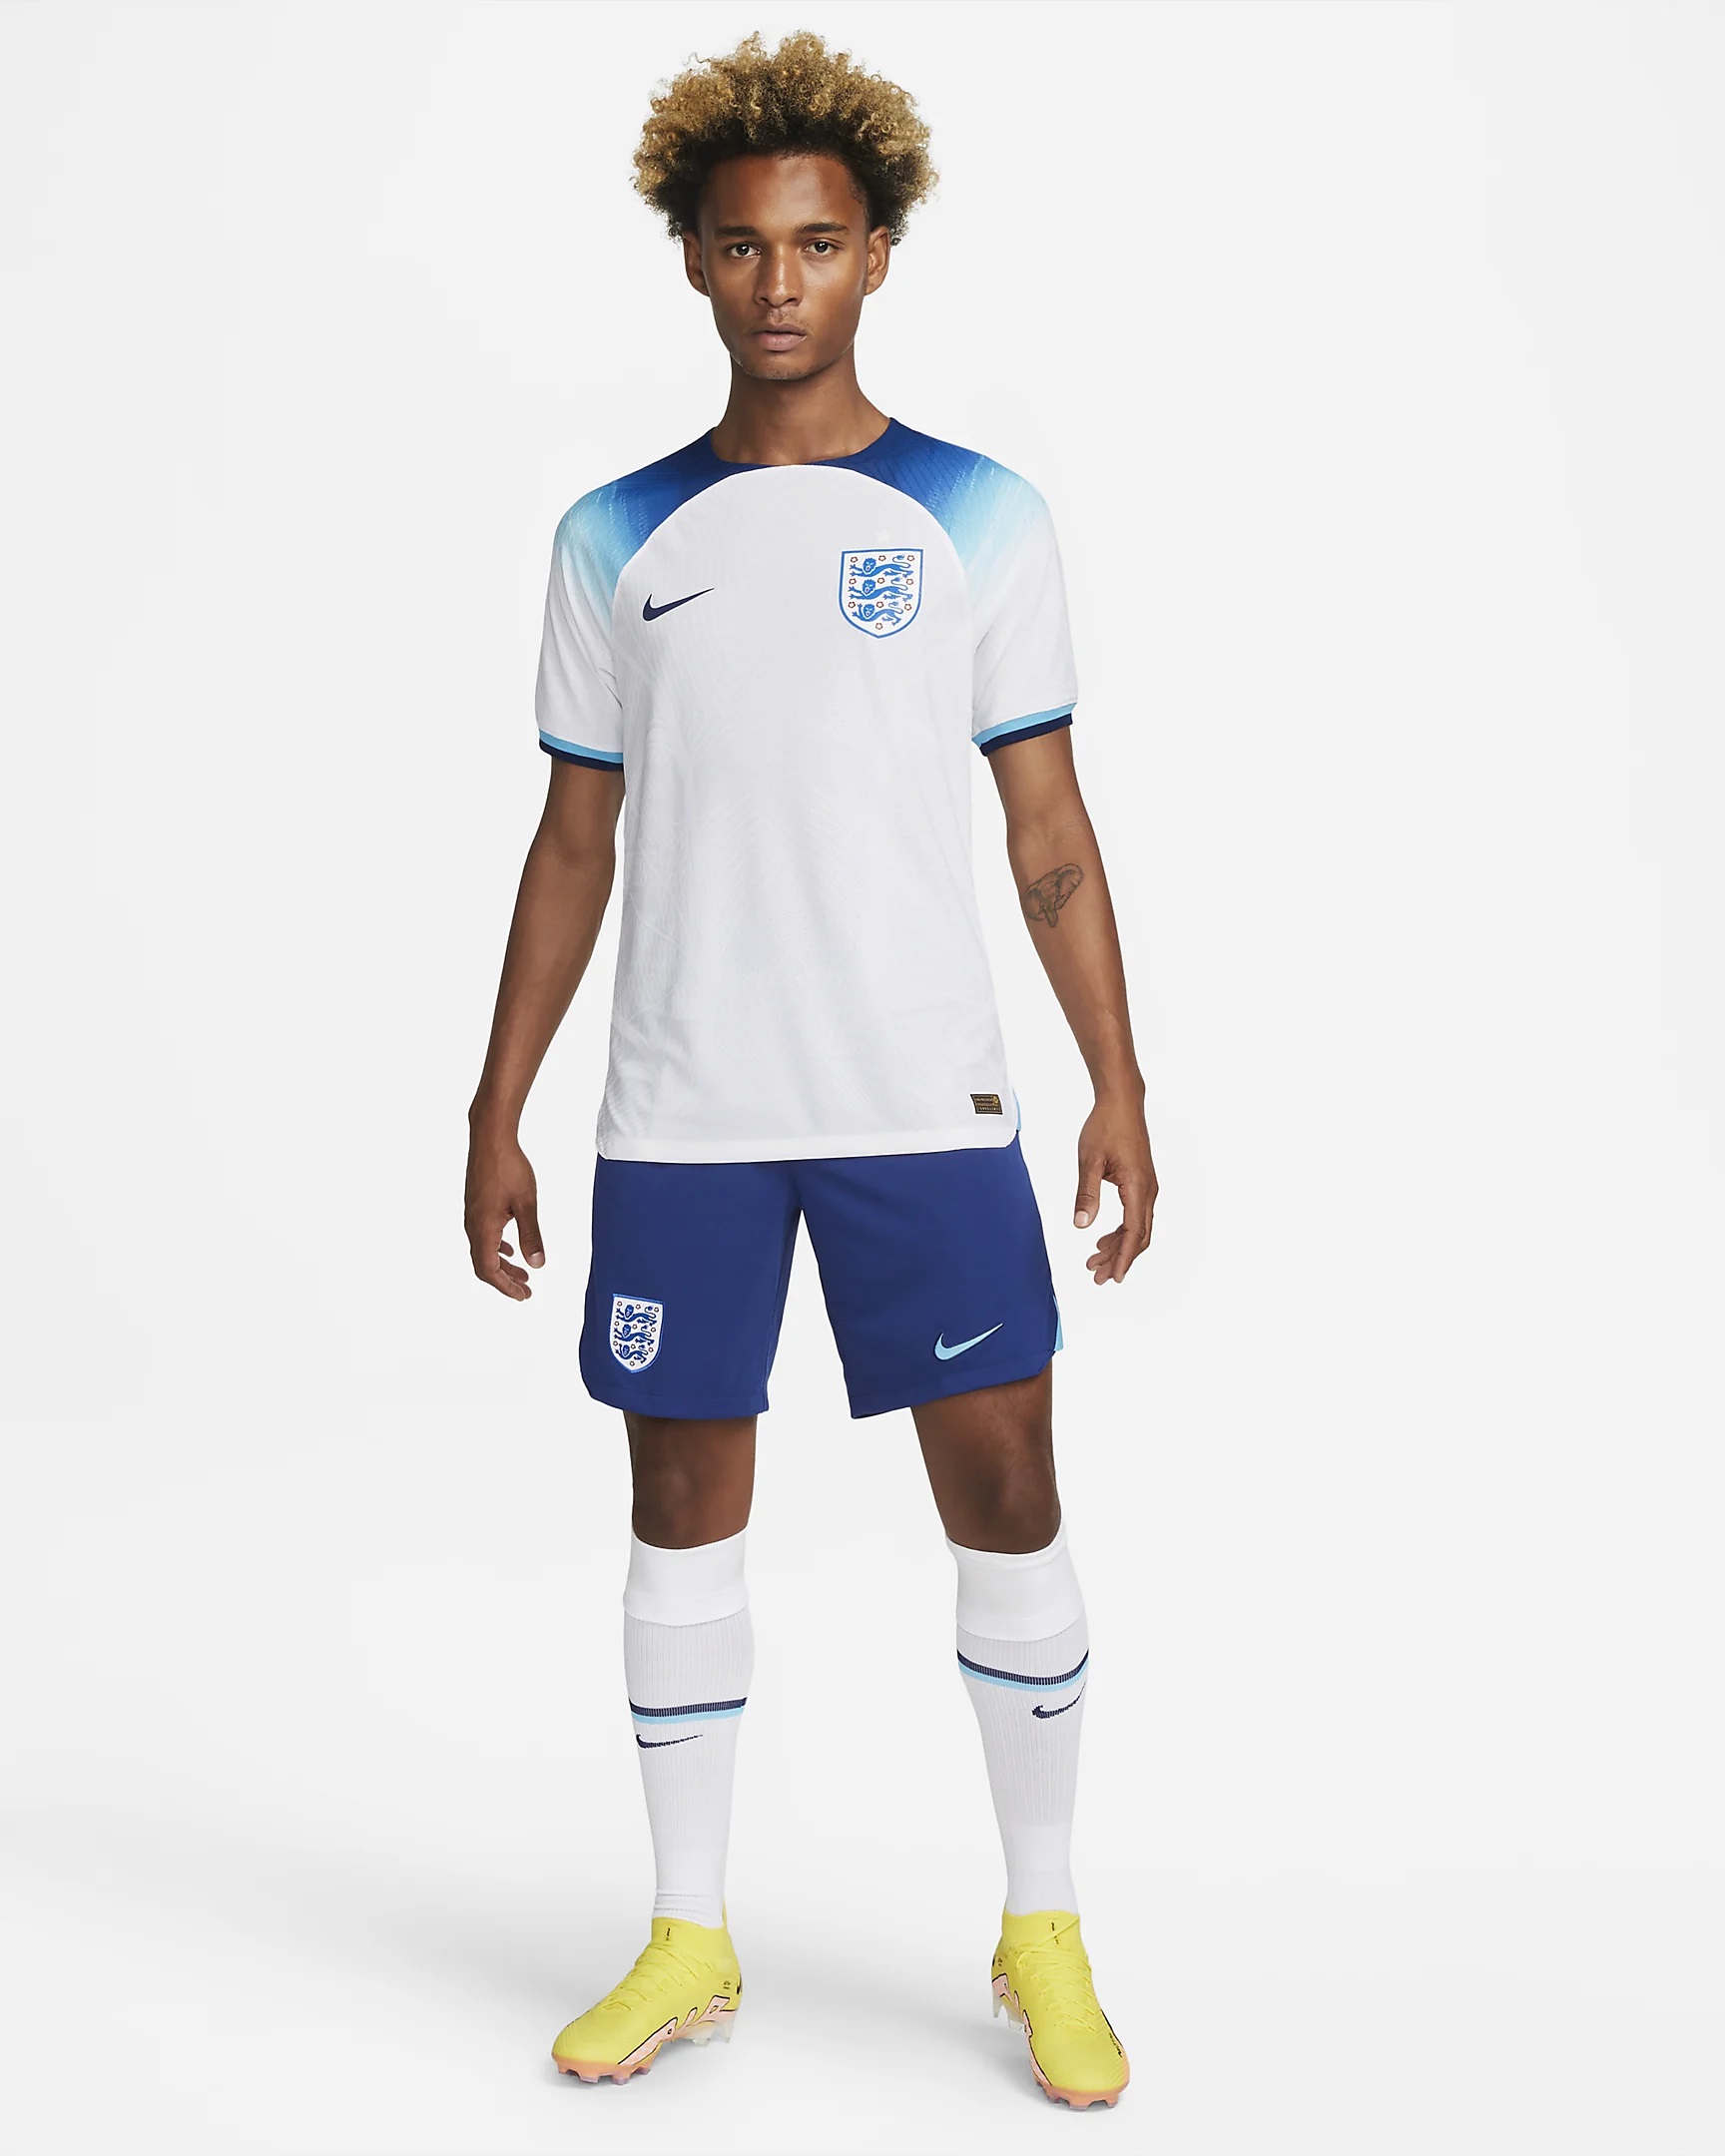 England 2022-23 Nike Home Kit - Football Shirt Culture - Latest ...